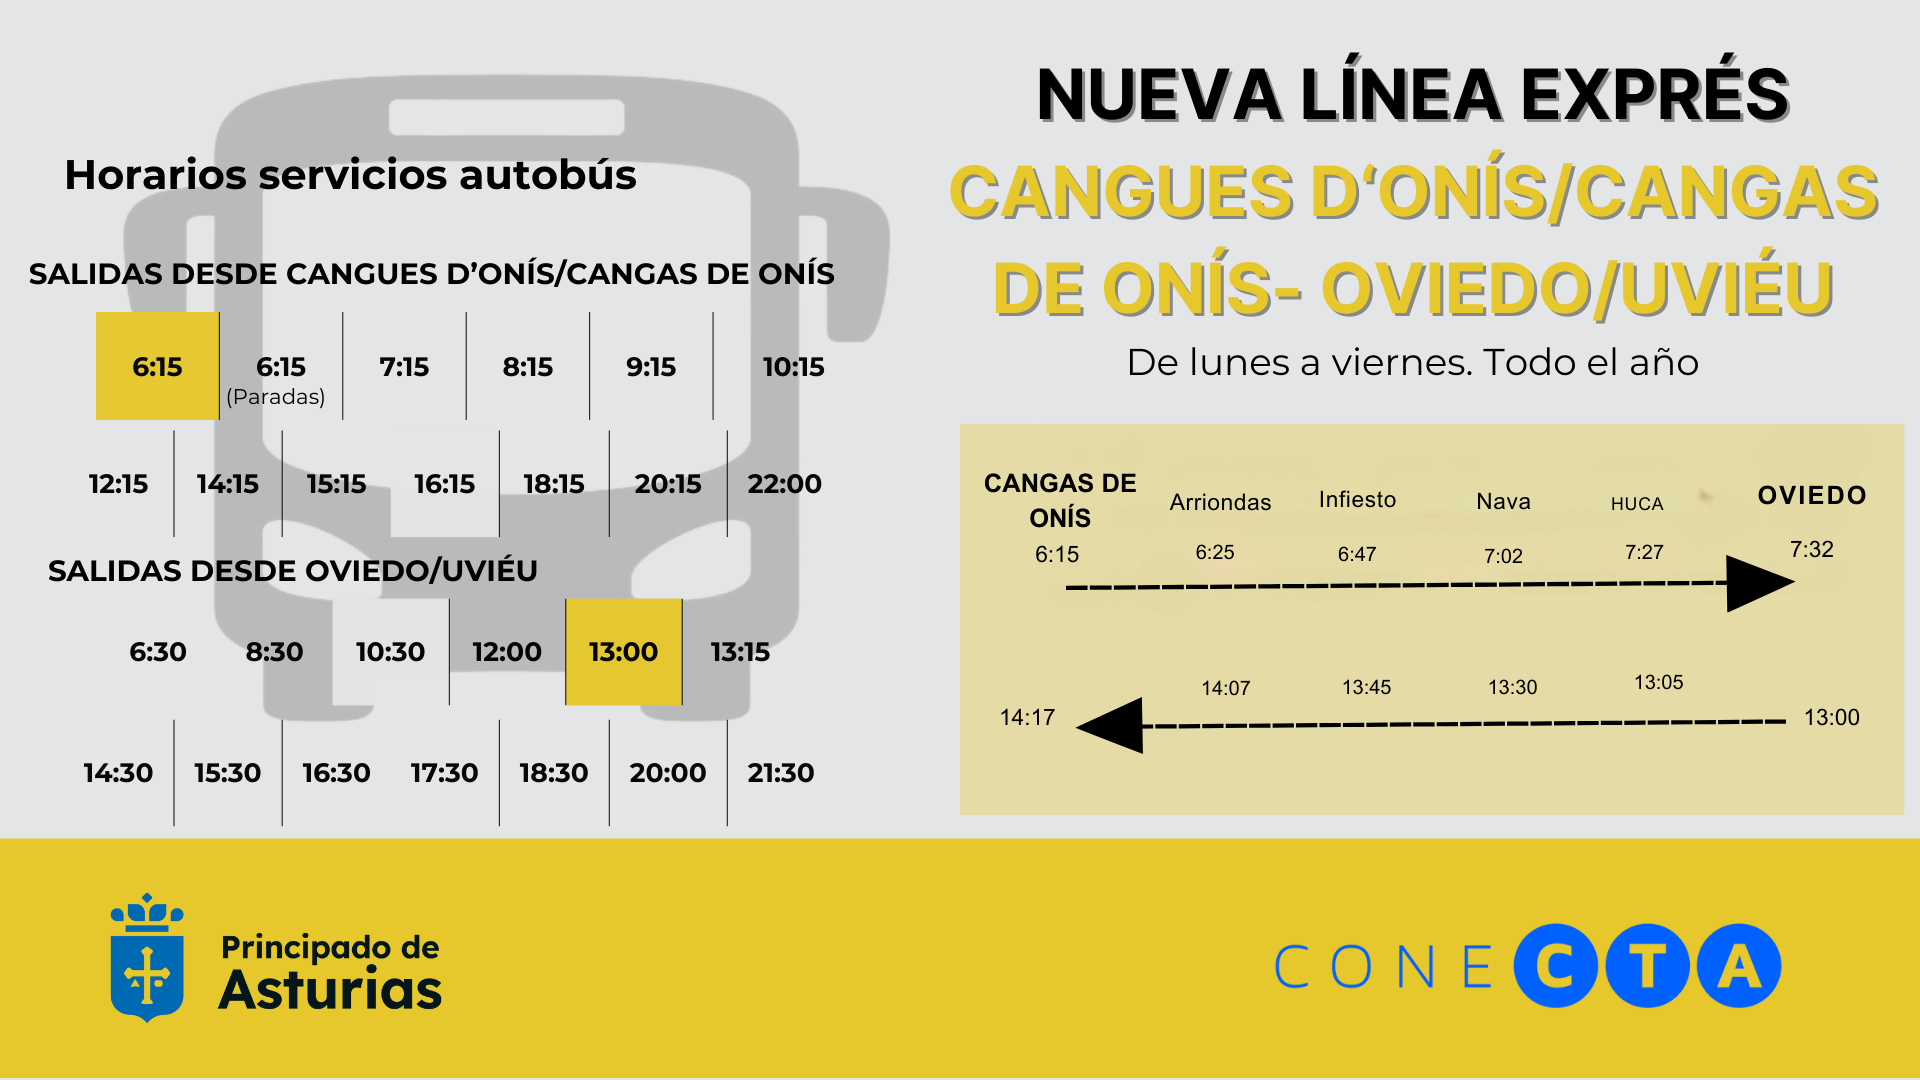 Imagen - Puesta en marcha de la nueva línea exprés de autobús entre Cangues d’Onís/Cangas de Onís y Oviedo/Uviéu